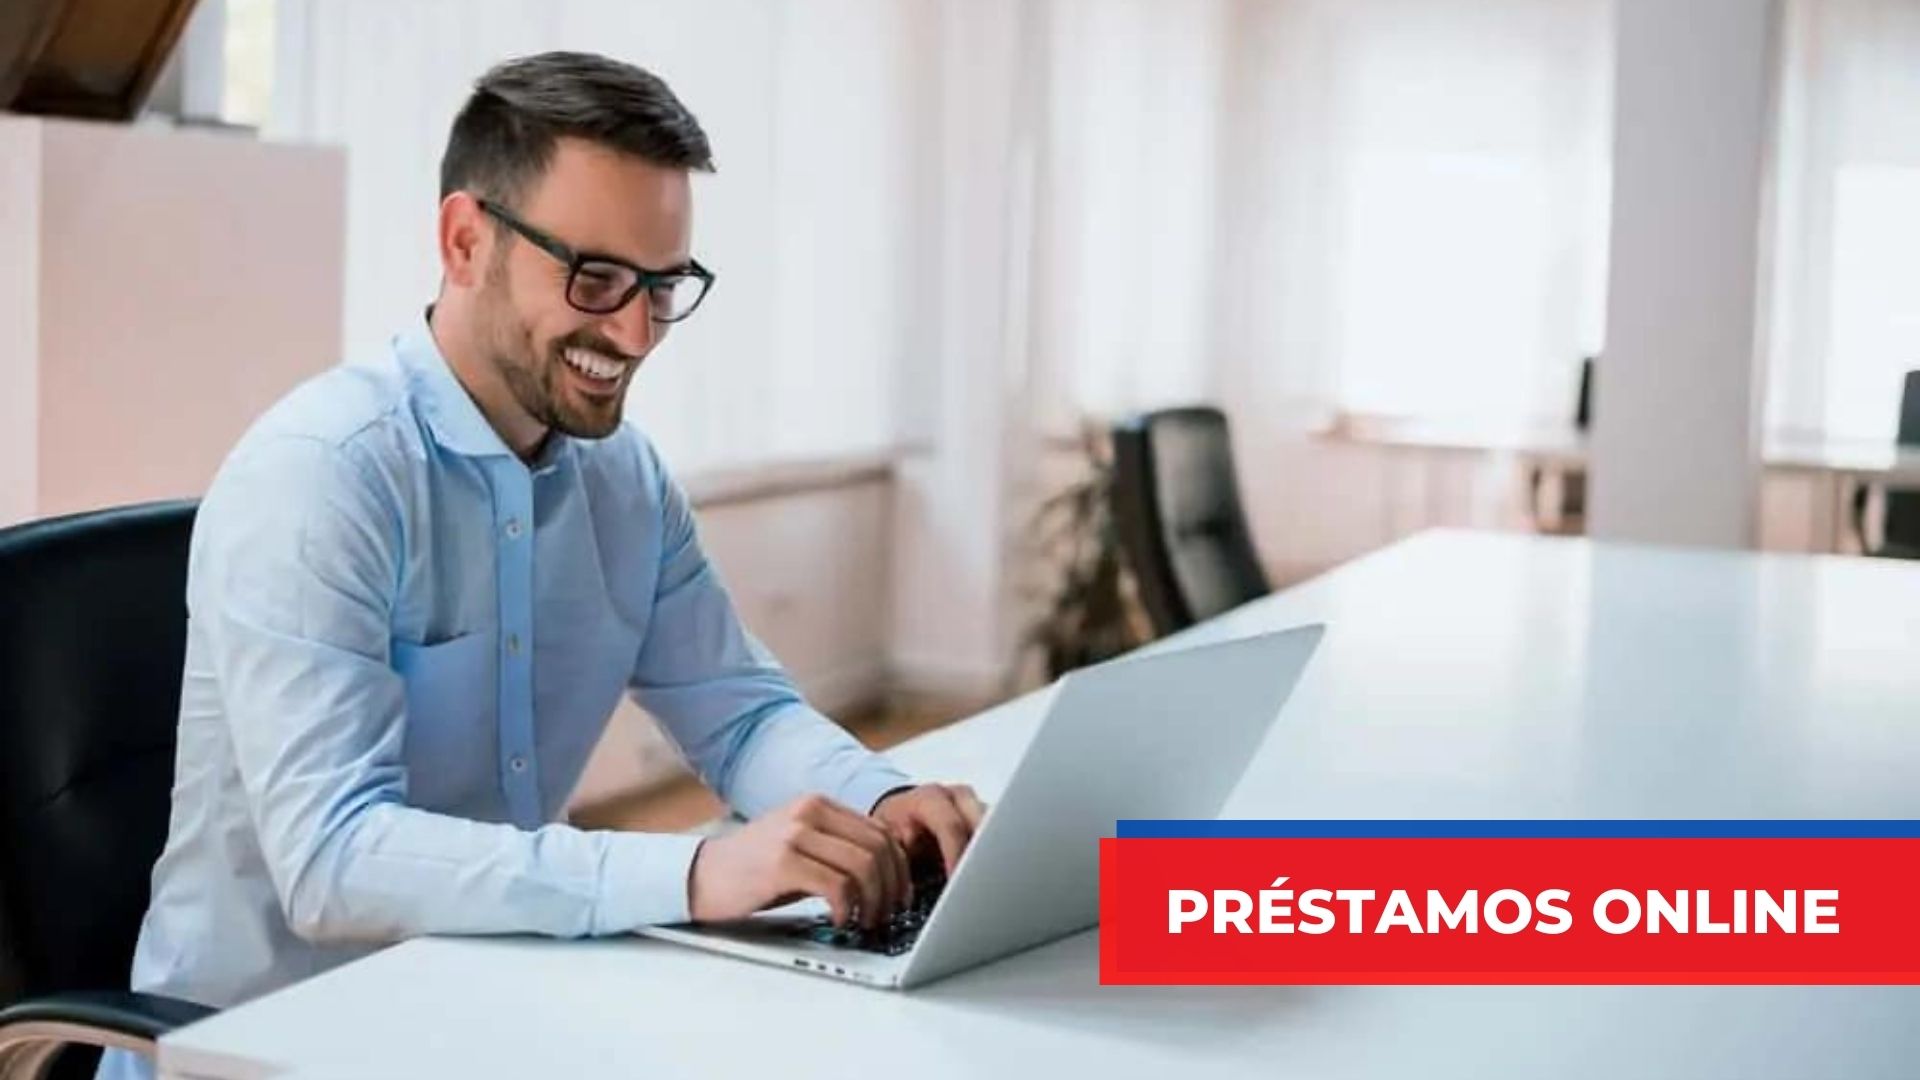 Article about Prestamos Online en el acto